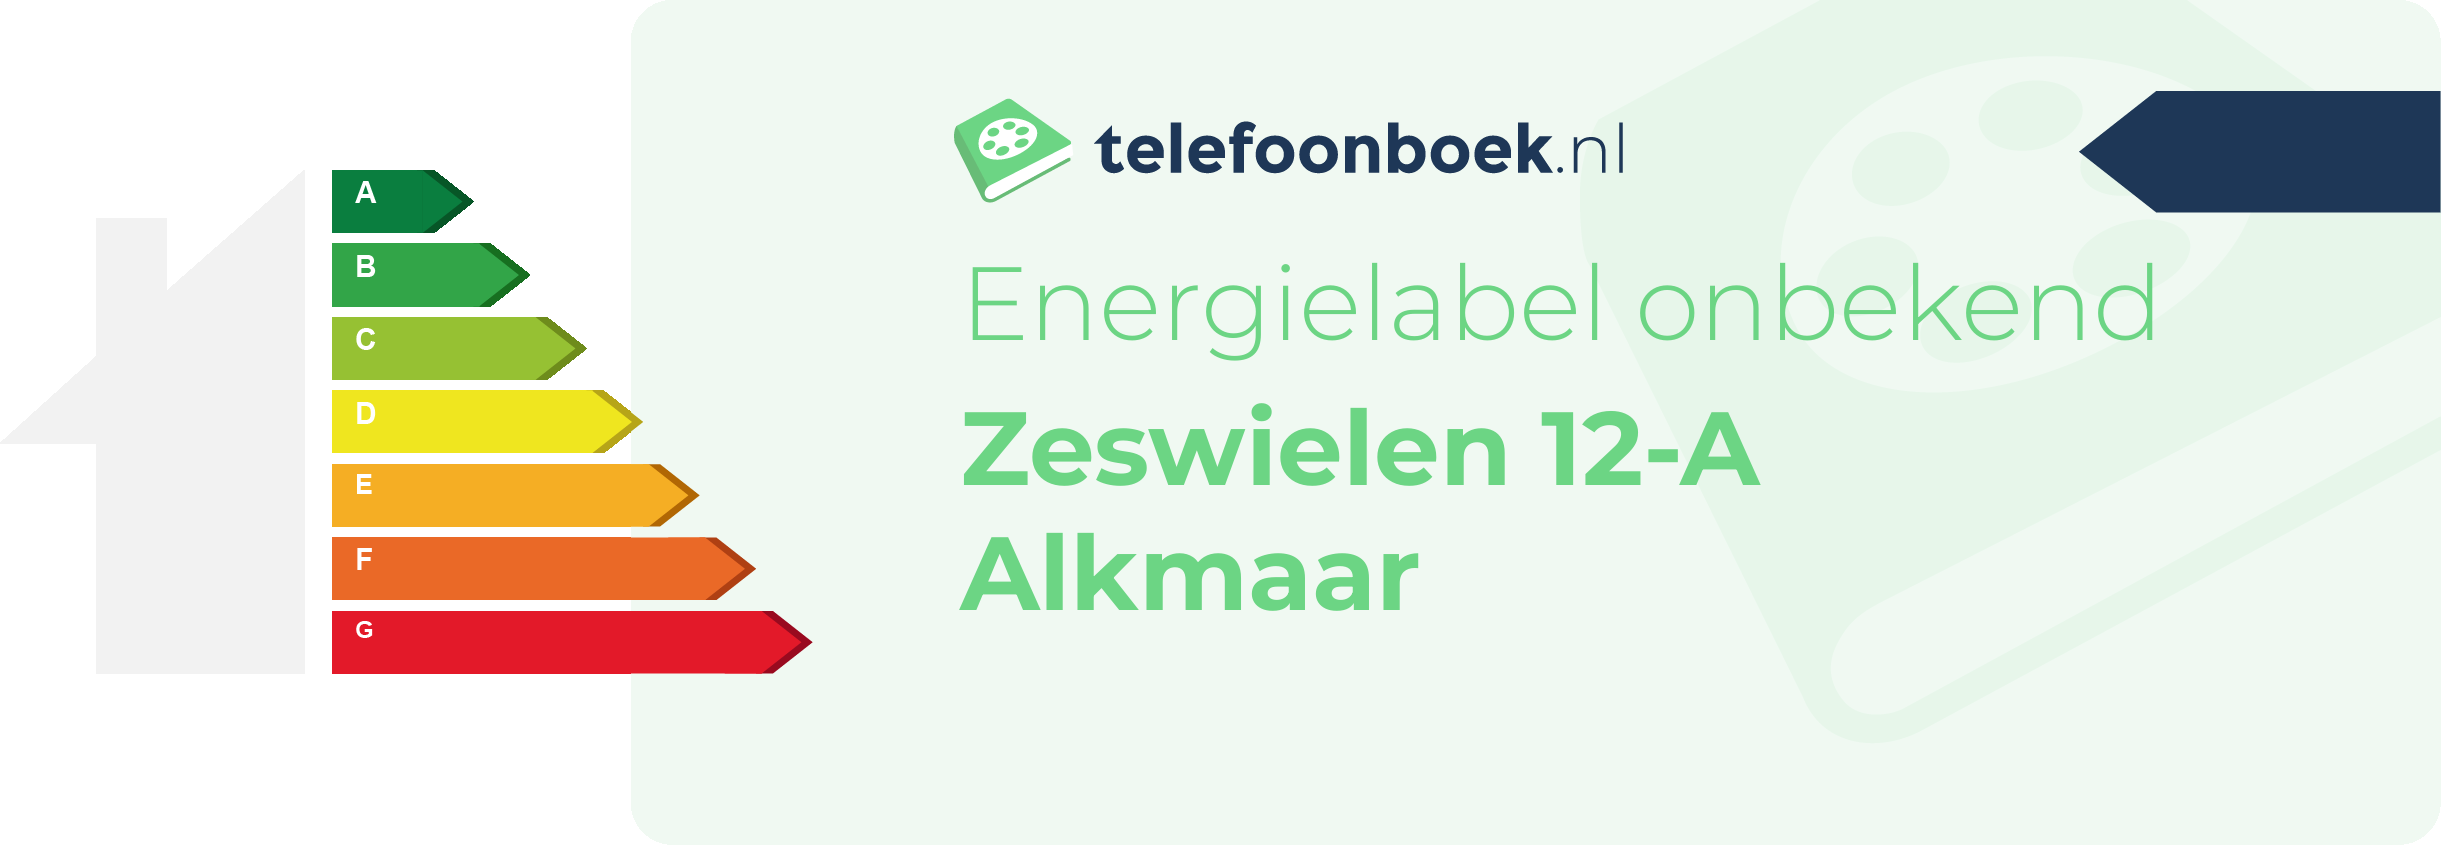 Energielabel Zeswielen 12-A Alkmaar